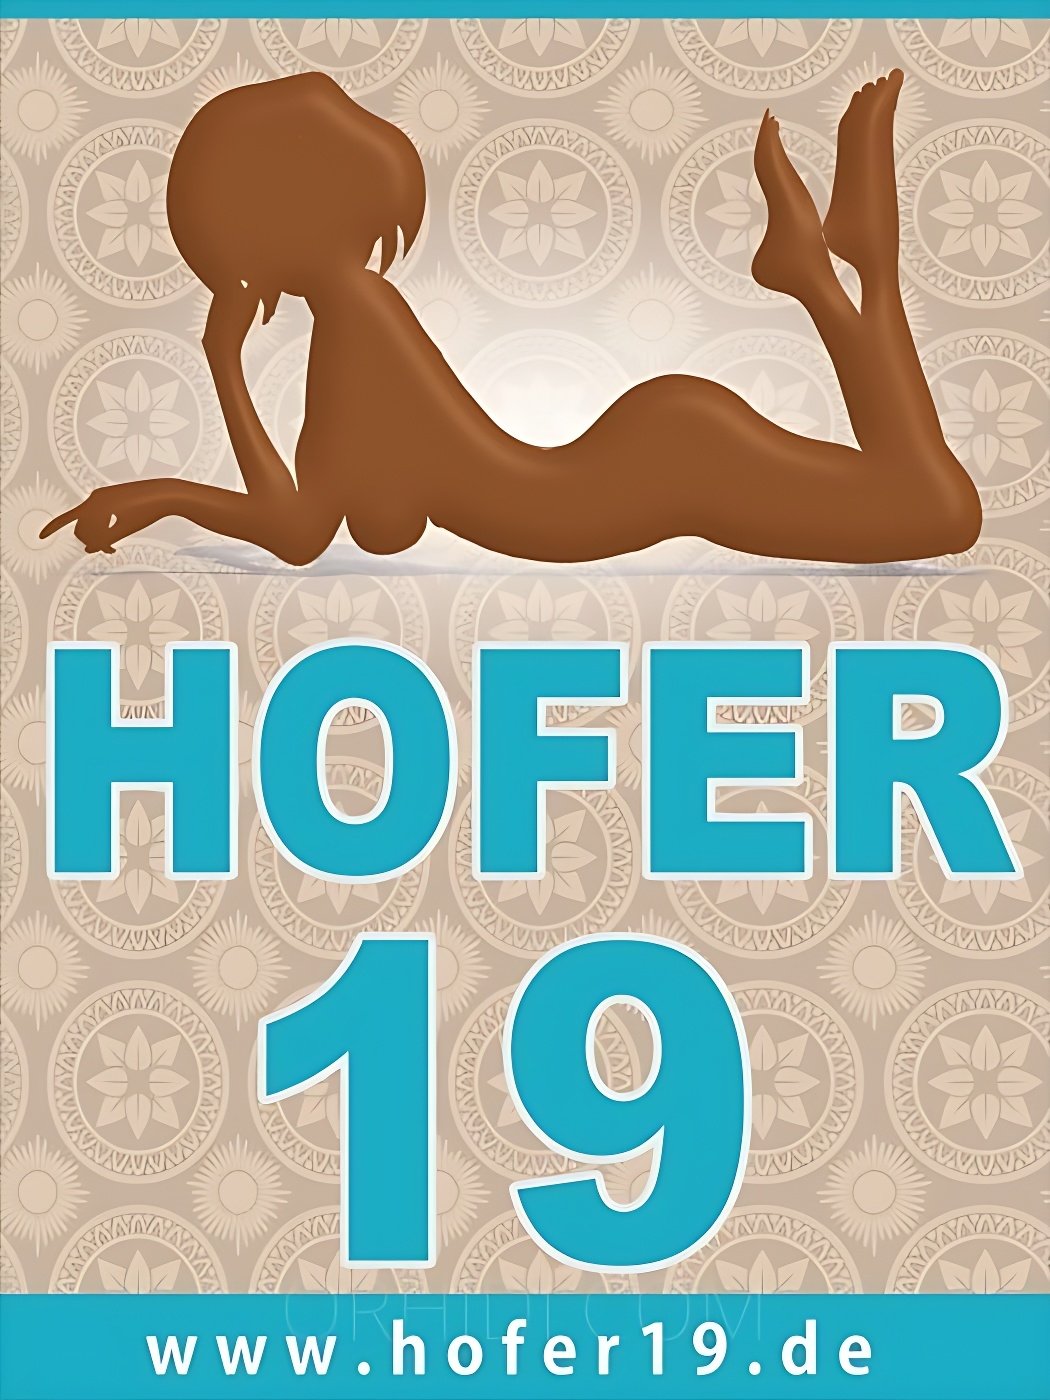 Best Hofer 19 in Munich - place main photo